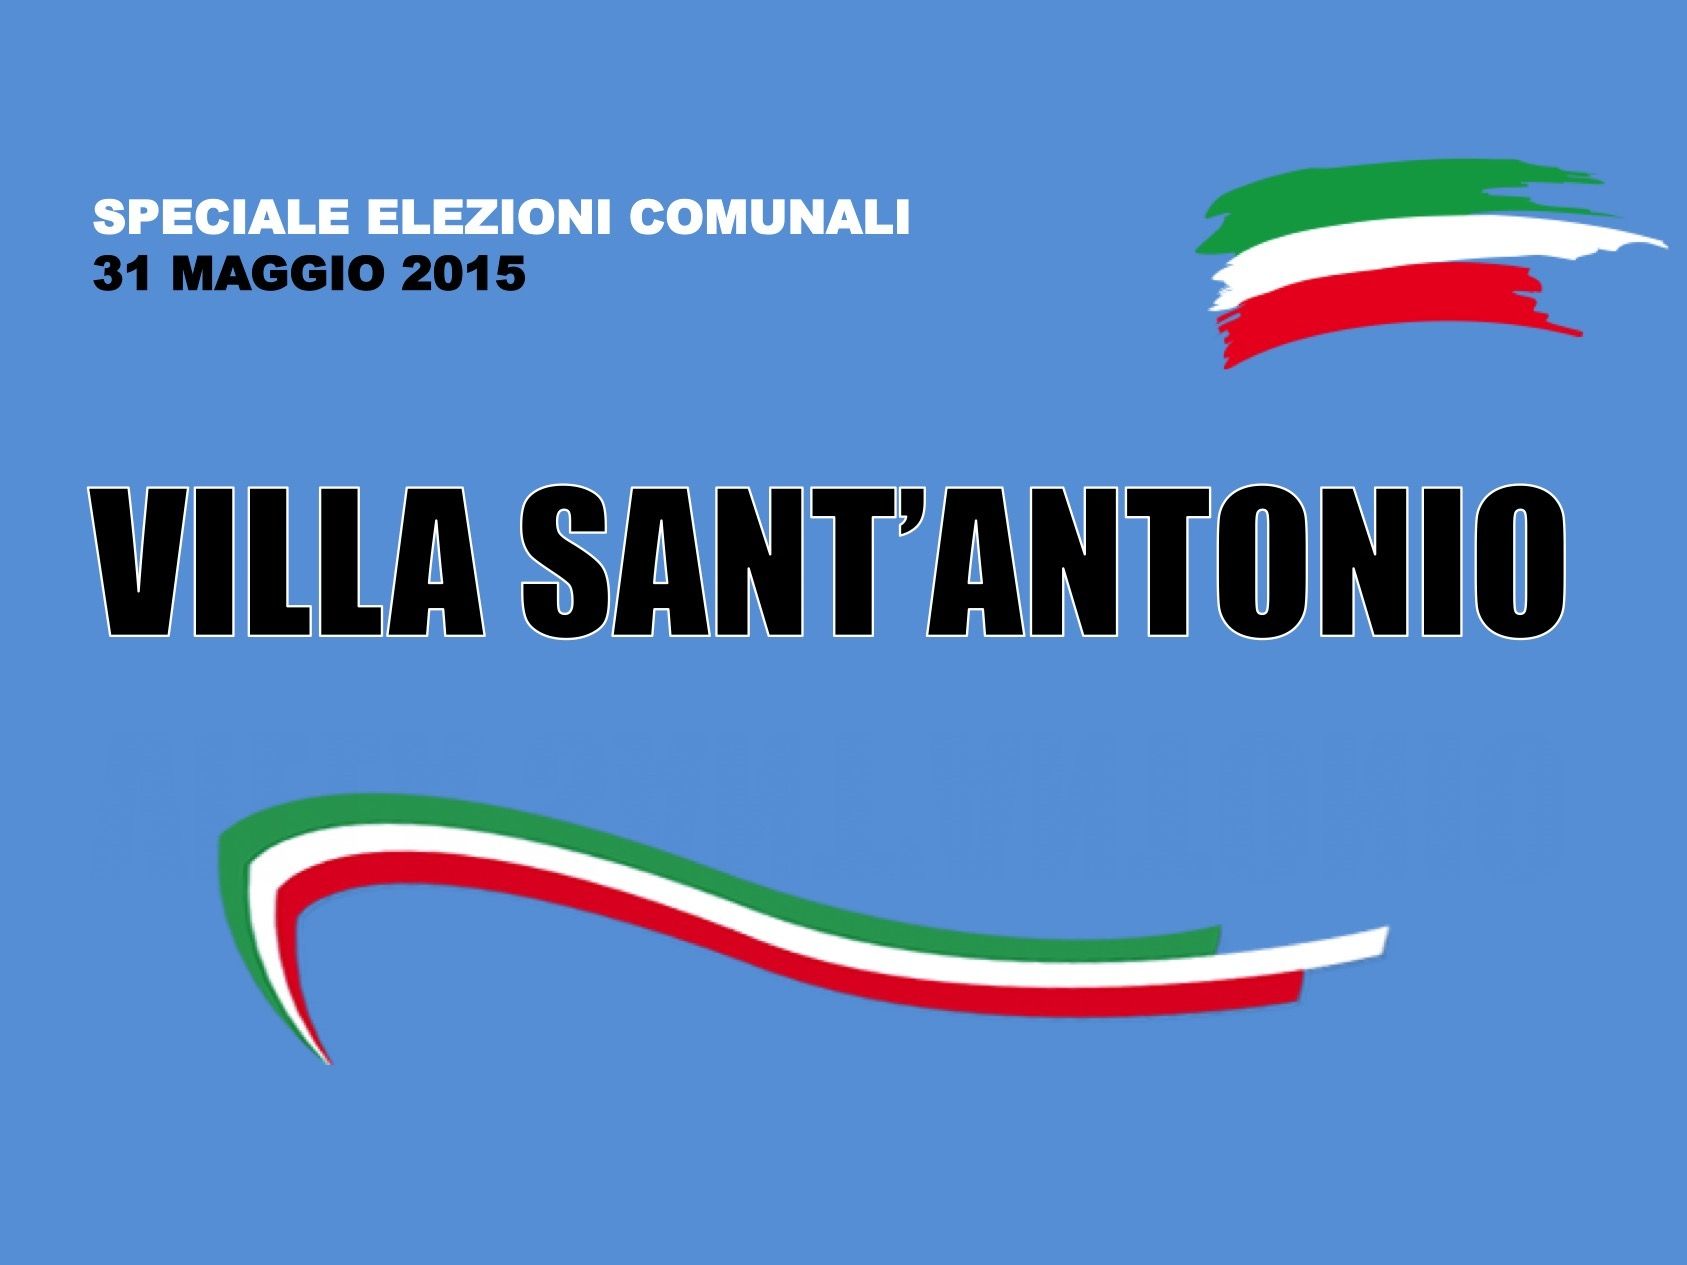 Villa Sant'Antonio. Elezioni Comunali 31 maggio 2015. I risultati delle votazioni